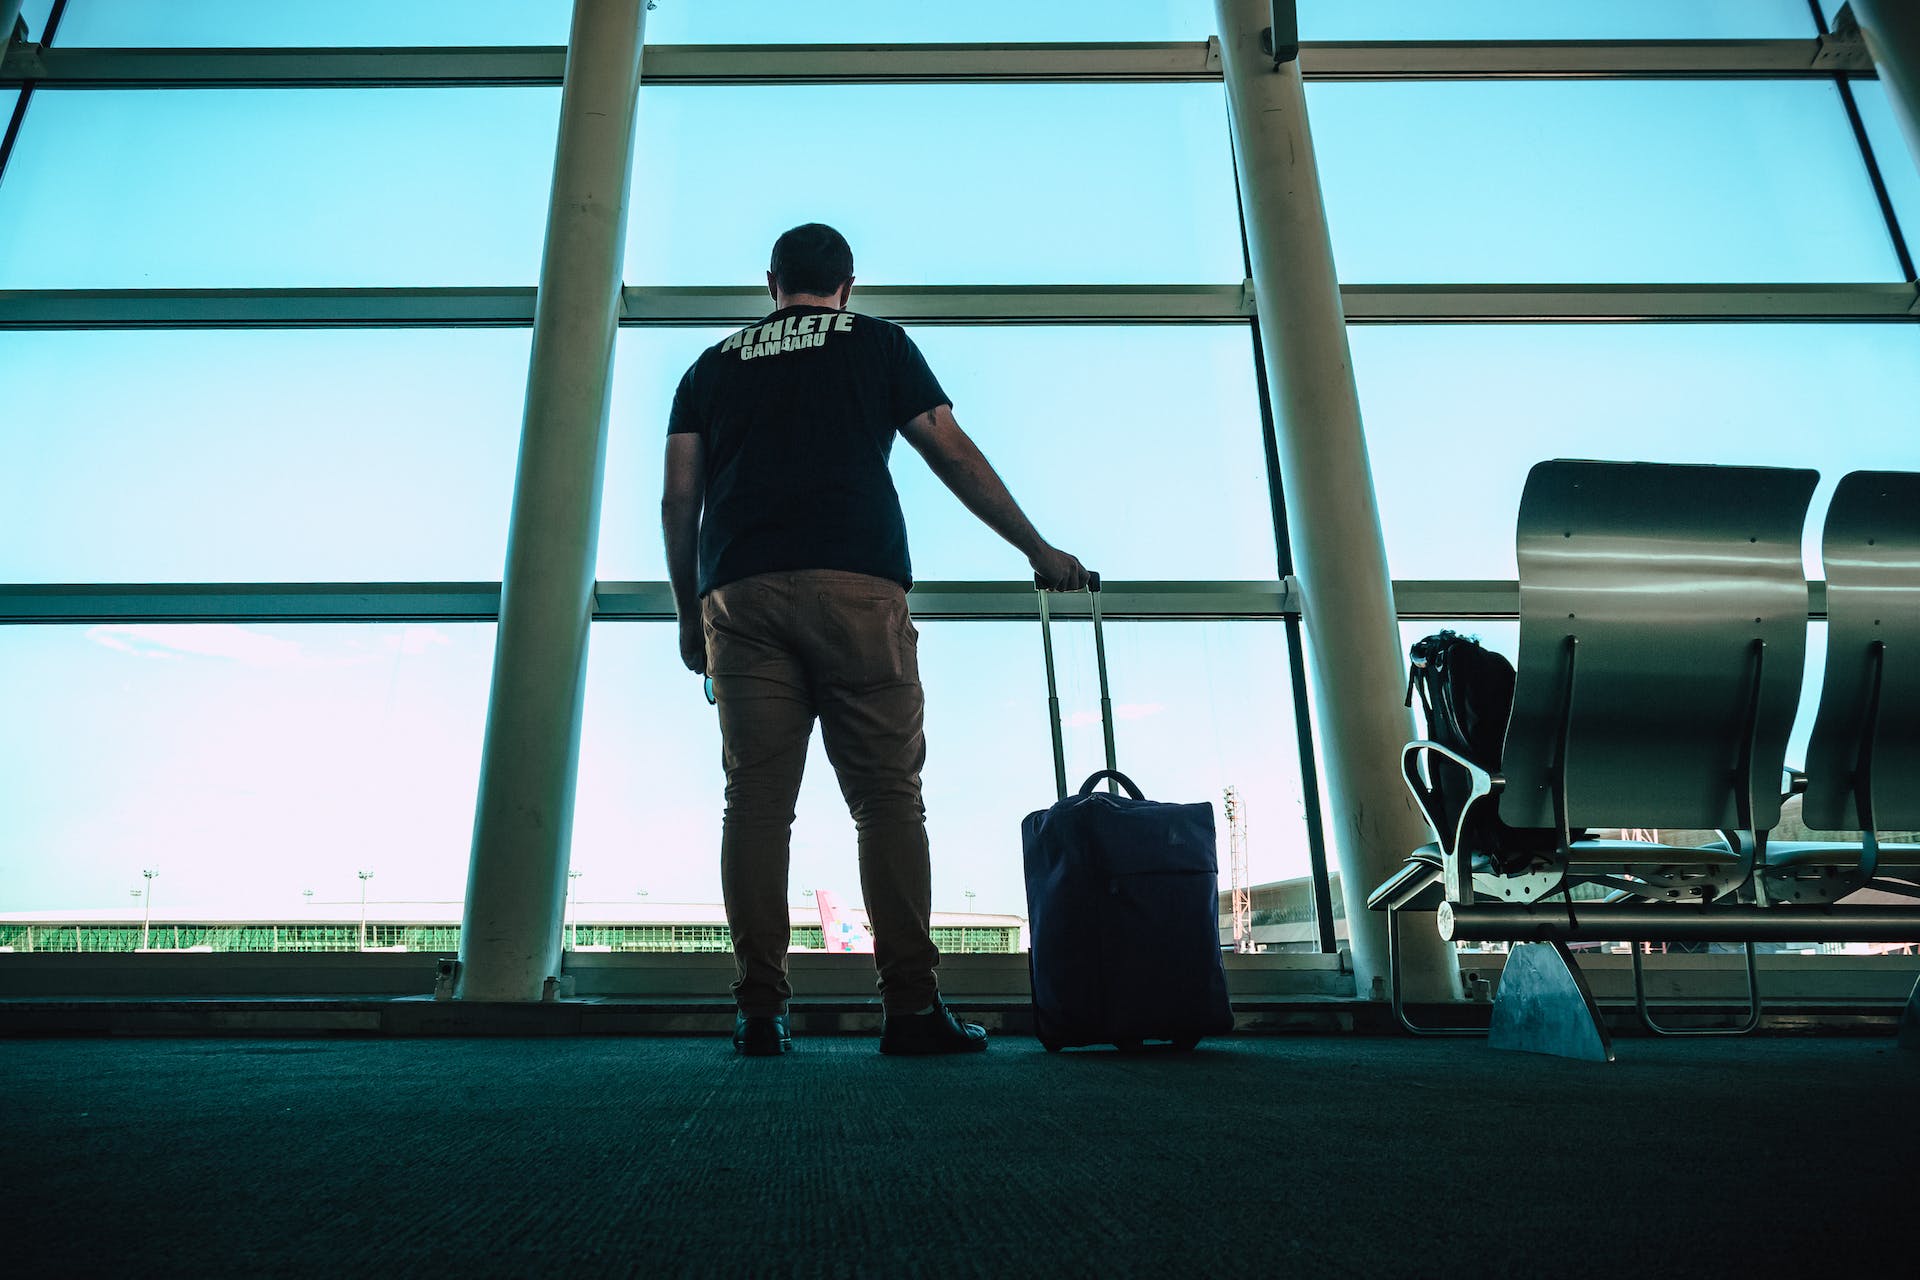 Silueta de un hombre y su maleta | Fuente: Pexels